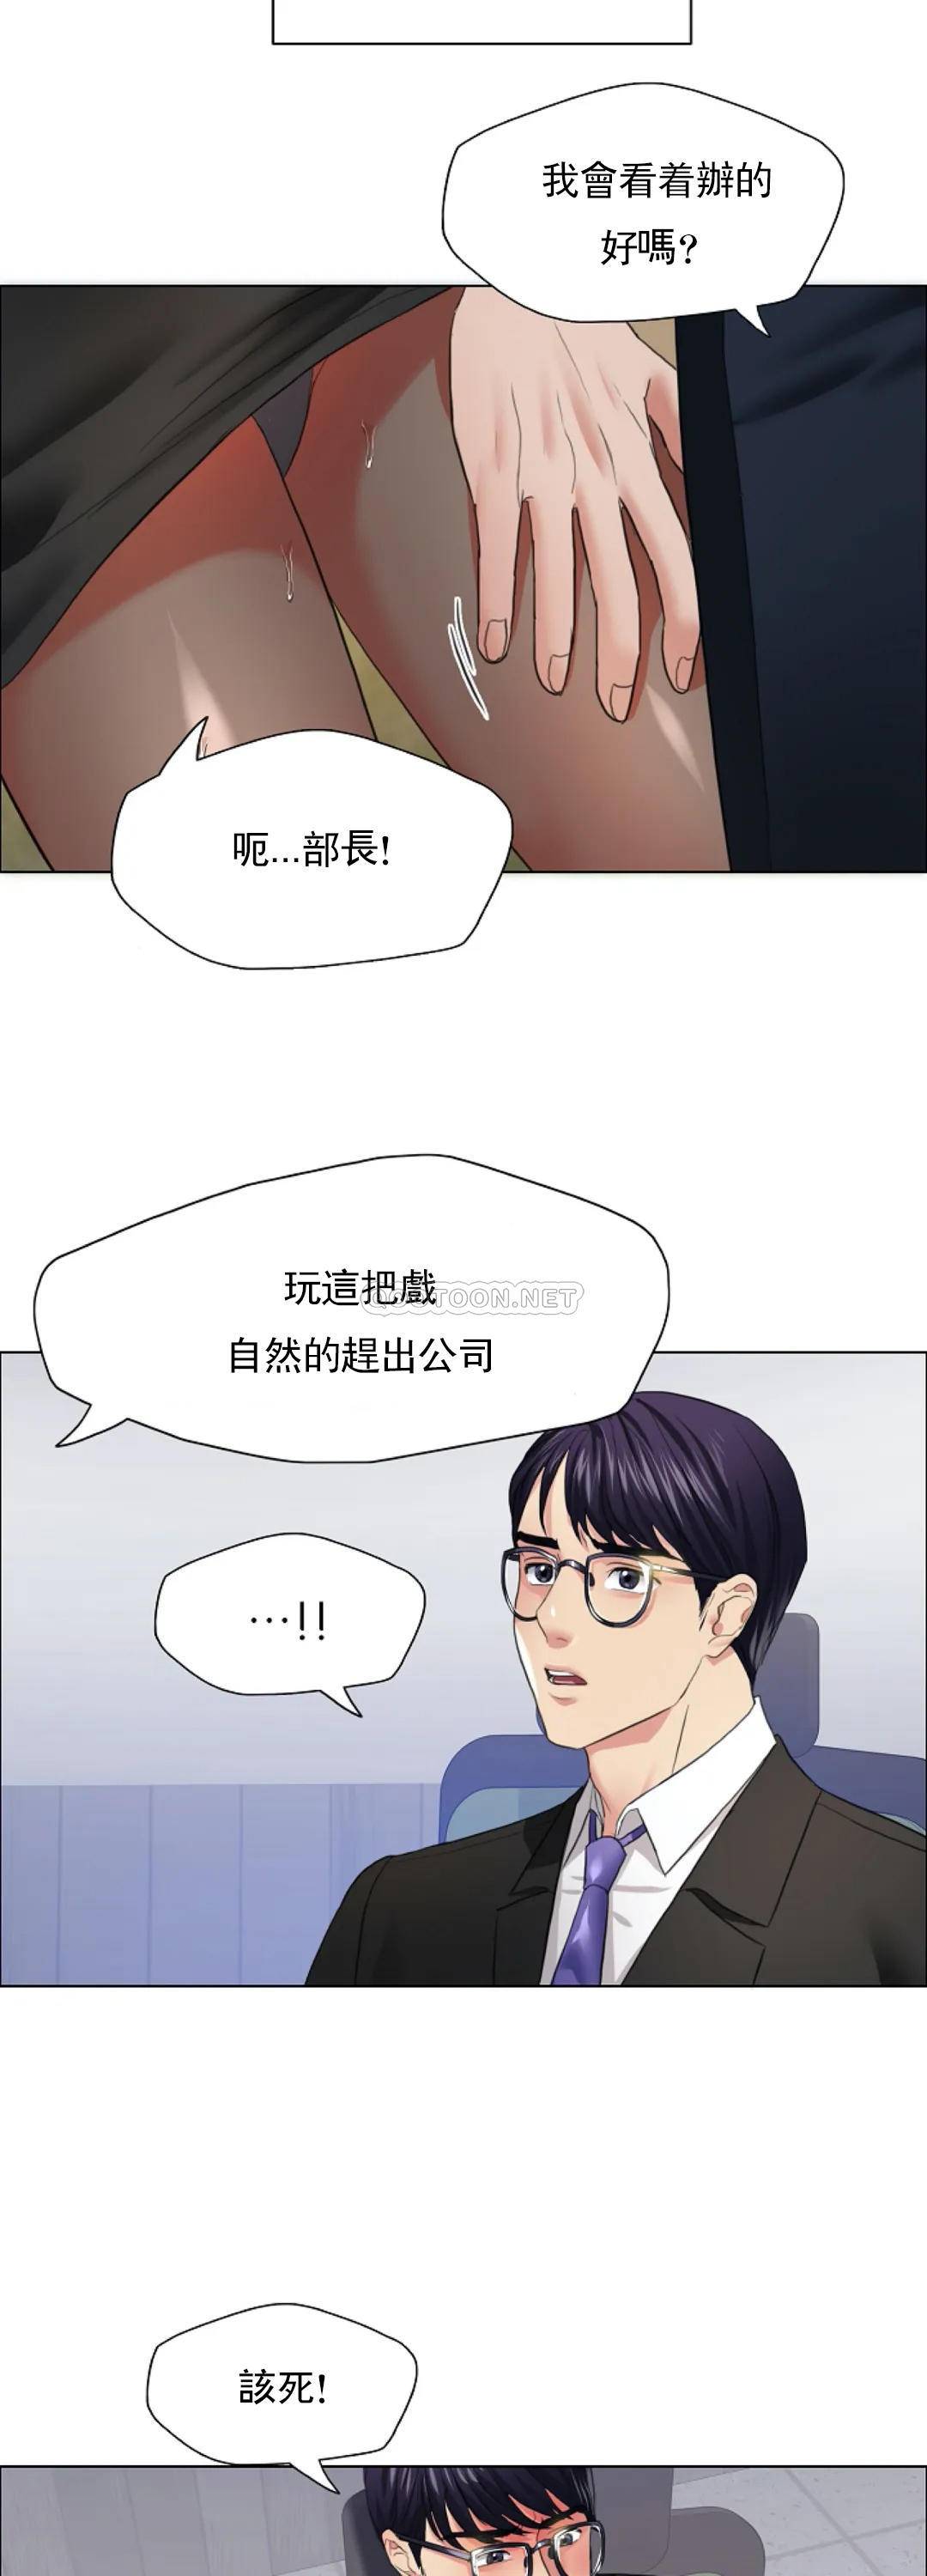 韩国污漫画 亂女 第25话不愿意就算了 25